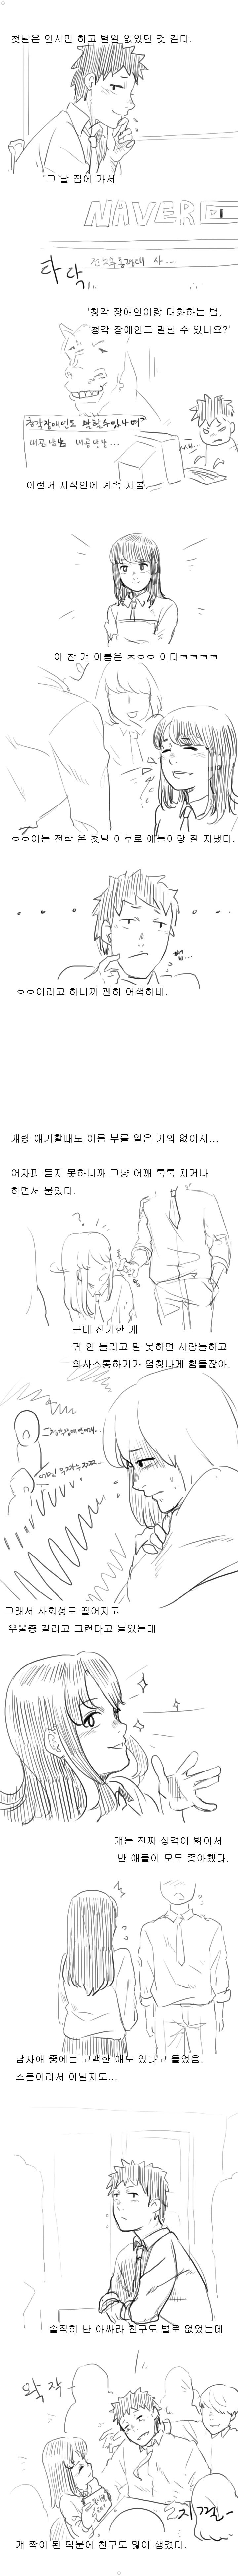 추억의 청각장애인 처자애랑 짝이었던 썰만화 ㅎㅎㅎㅎㅎ 이미지 #3